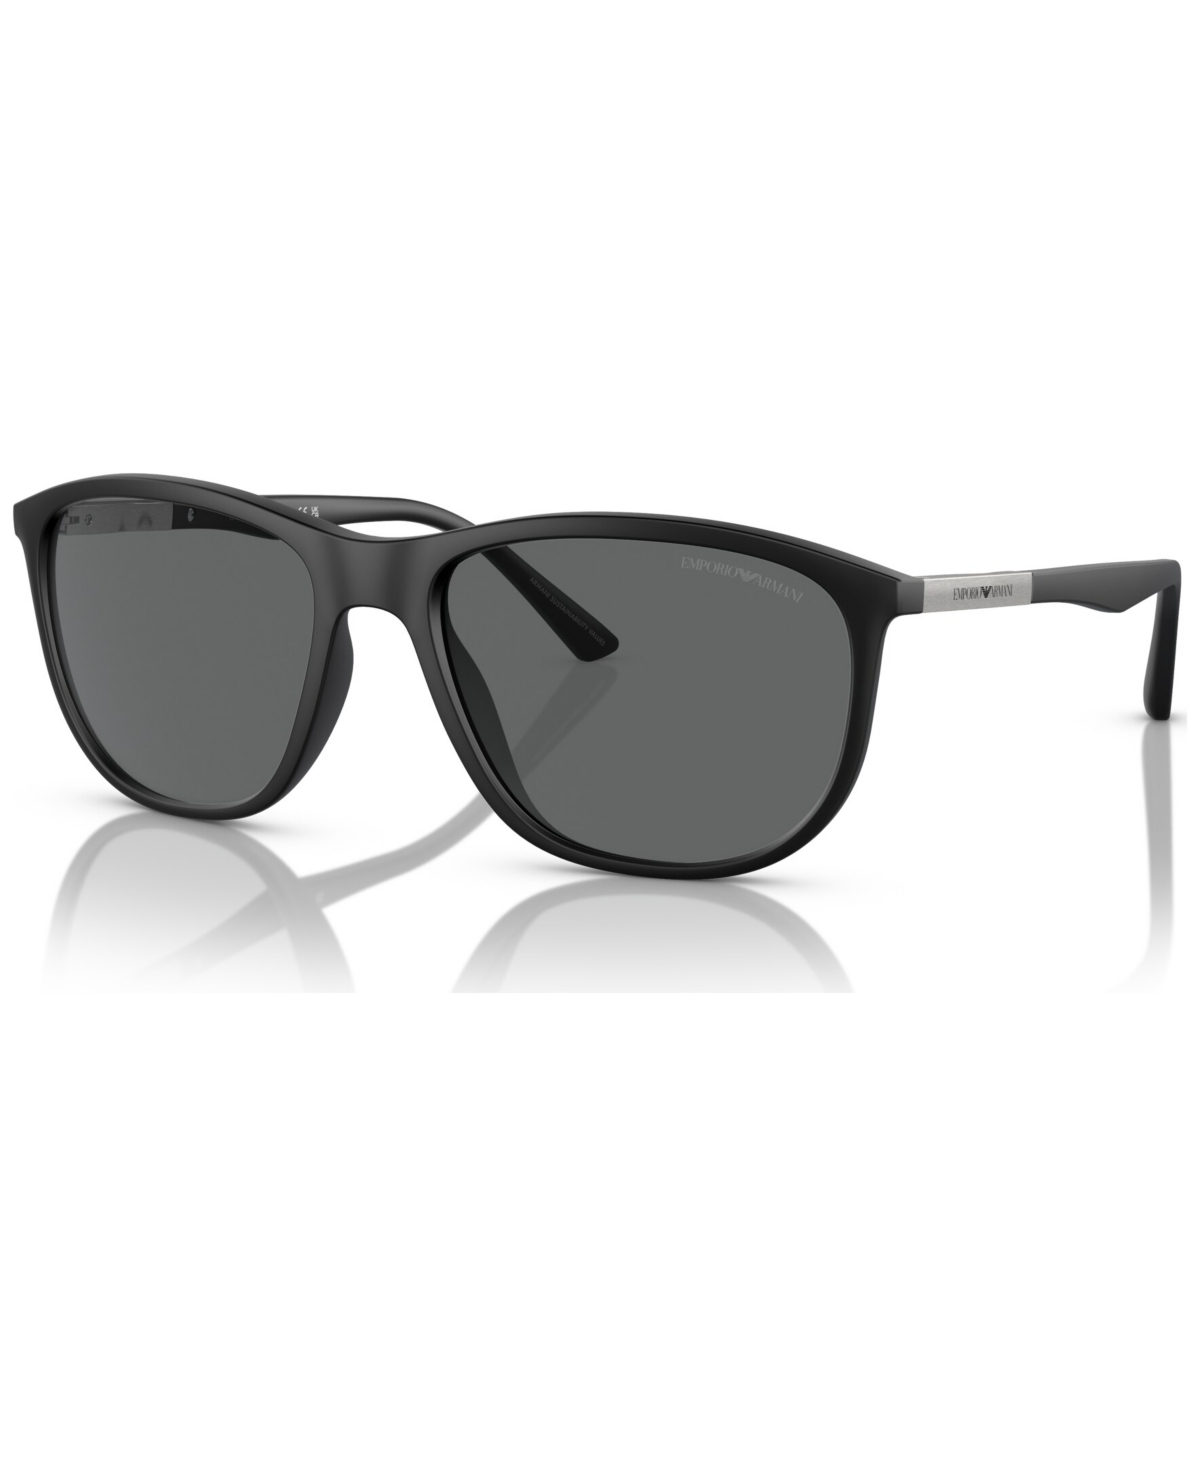 Emporio Armani Men's Sunglasses, Ea4201 In Matte Gray